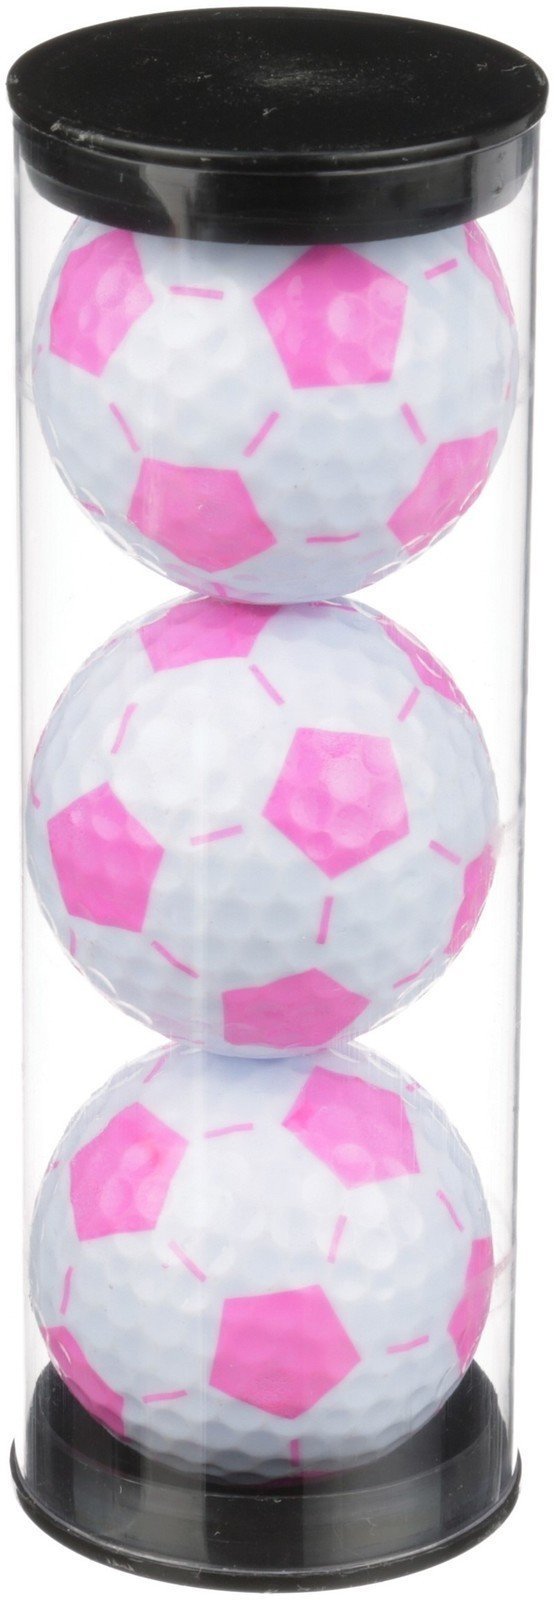 Golf Balls Nitro Soccer Ball White/Pink 3 Ball Tube